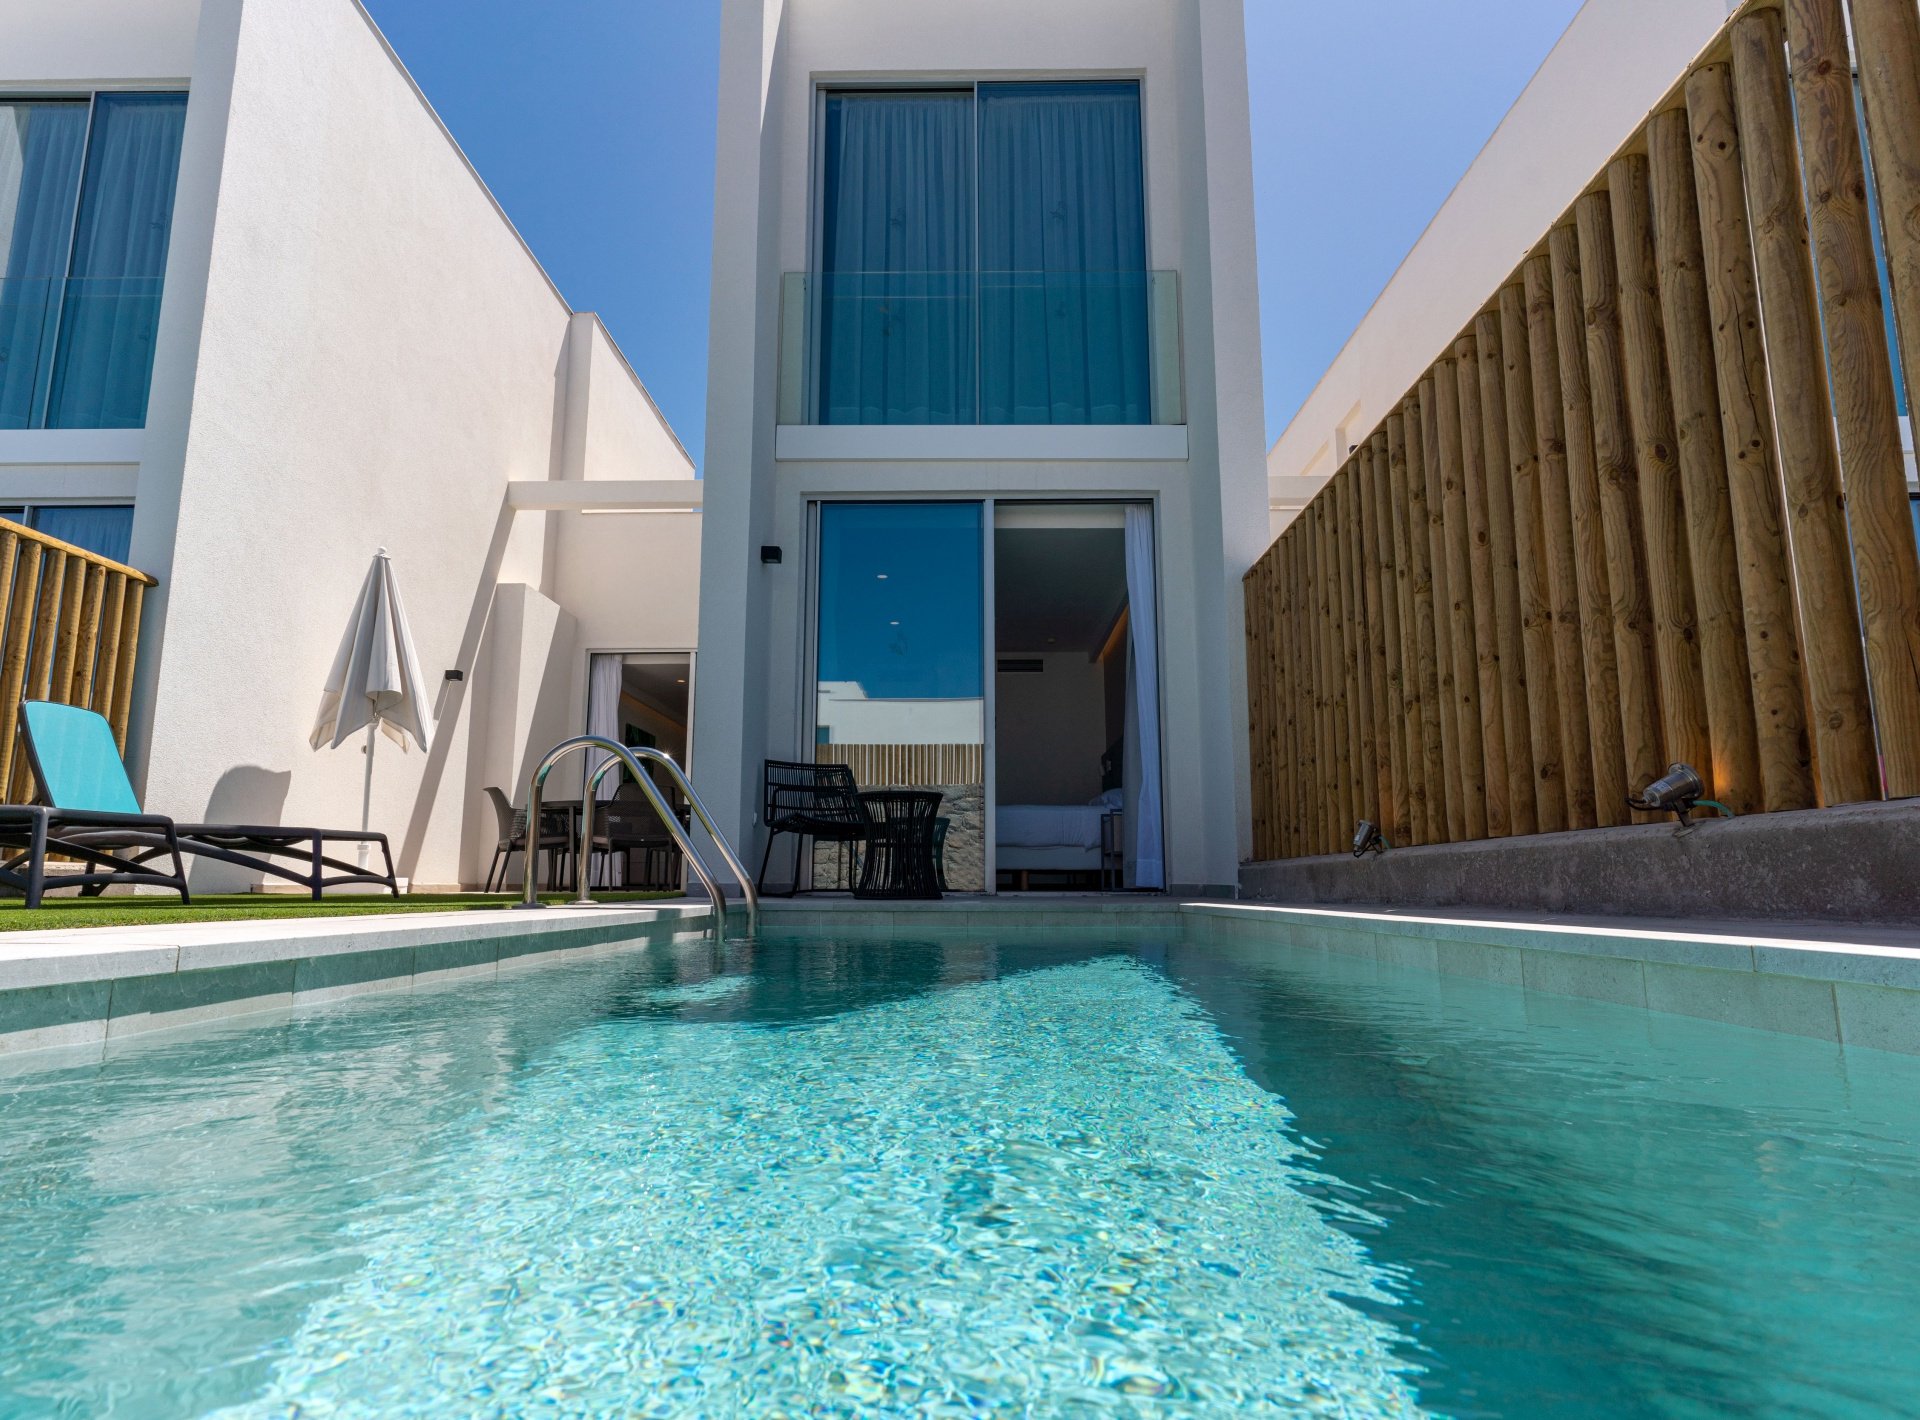 ISholidays Santa Agueda, Casa 2 dormitorios Deluxe Duplex, piscina privada.